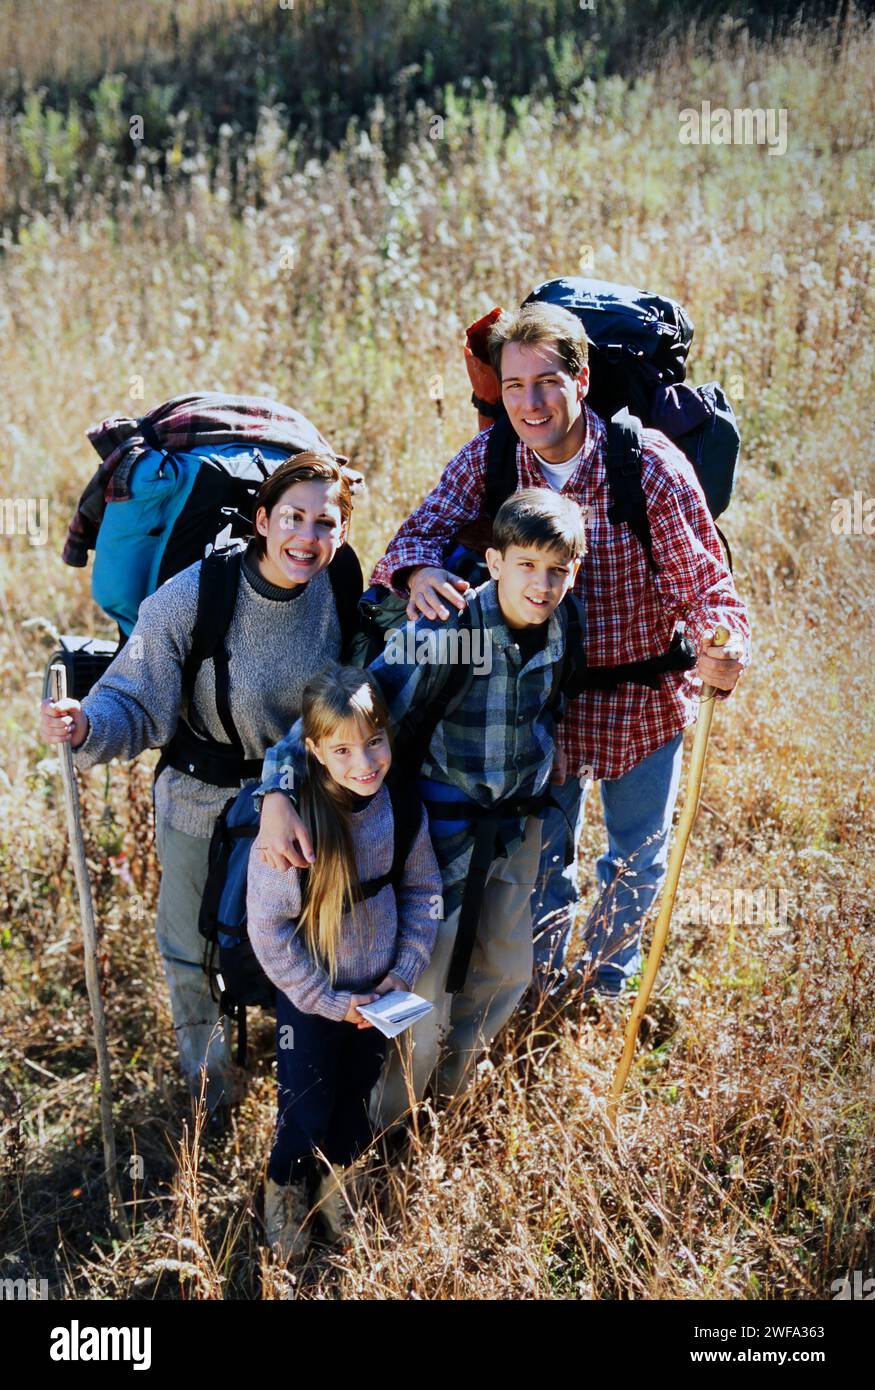 Ein Porträt einer glücklichen Familie mit zwei Kindern und Rucksäcken lächelt die Kamera an, während Sie an einem sonnigen Herbsttag auf einem grasbewachsenen Feld wandern. Stockfoto